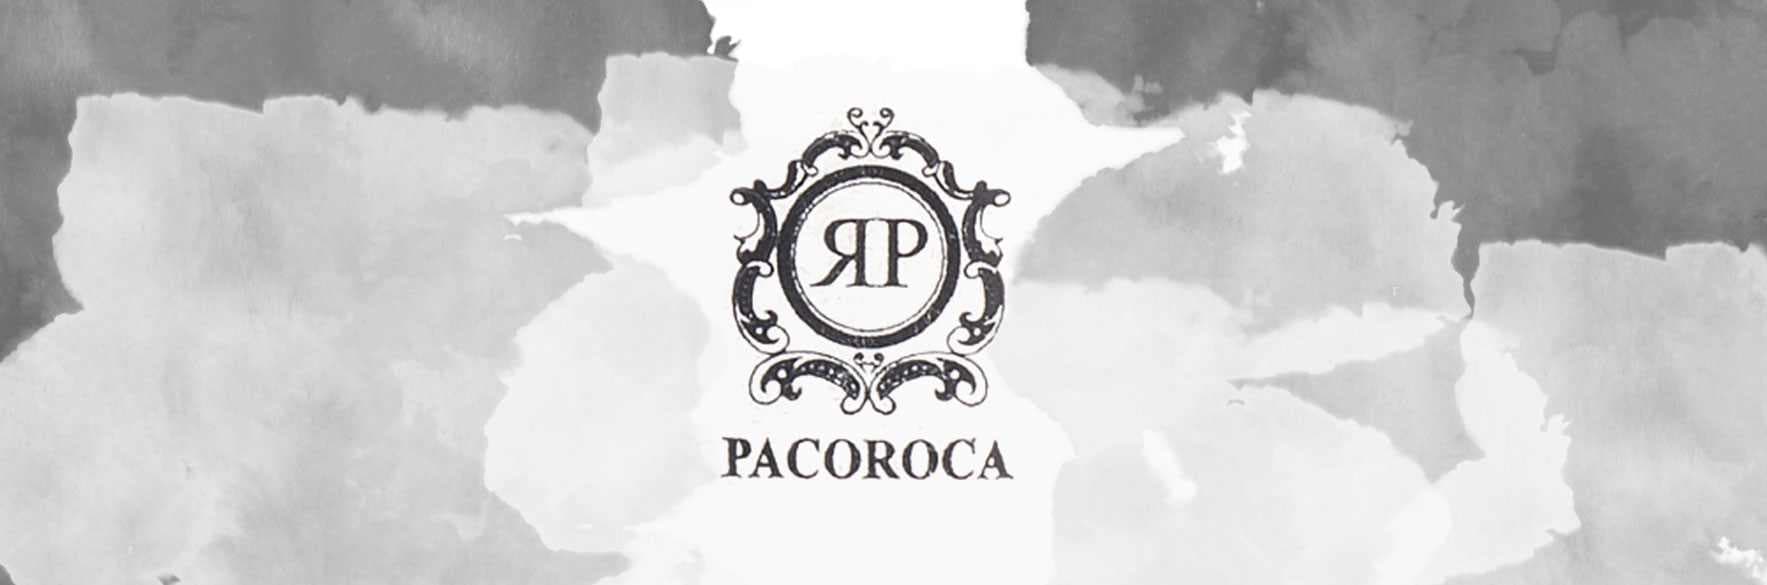 خرید محصولات پاکوروکا PACOROCA فرانسه